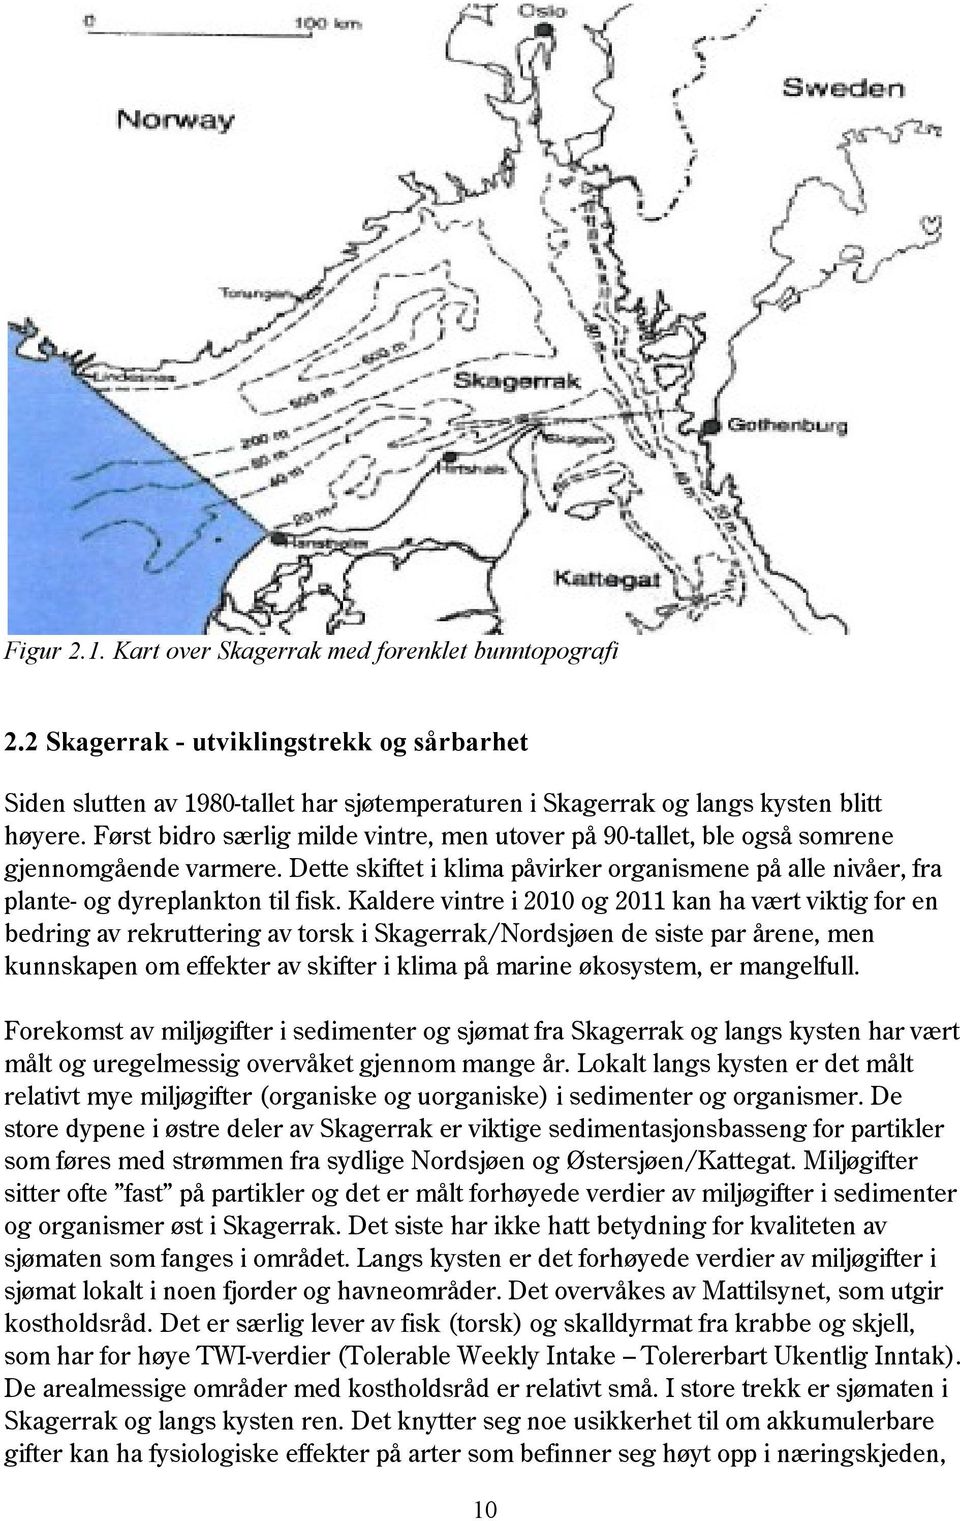 Kaldere vintre i 2010 og 2011 kan ha vært viktig for en bedring av rekruttering av torsk i Skagerrak/Nordsjøen de siste par årene, men kunnskapen om effekter av skifter i klima på marine økosystem,